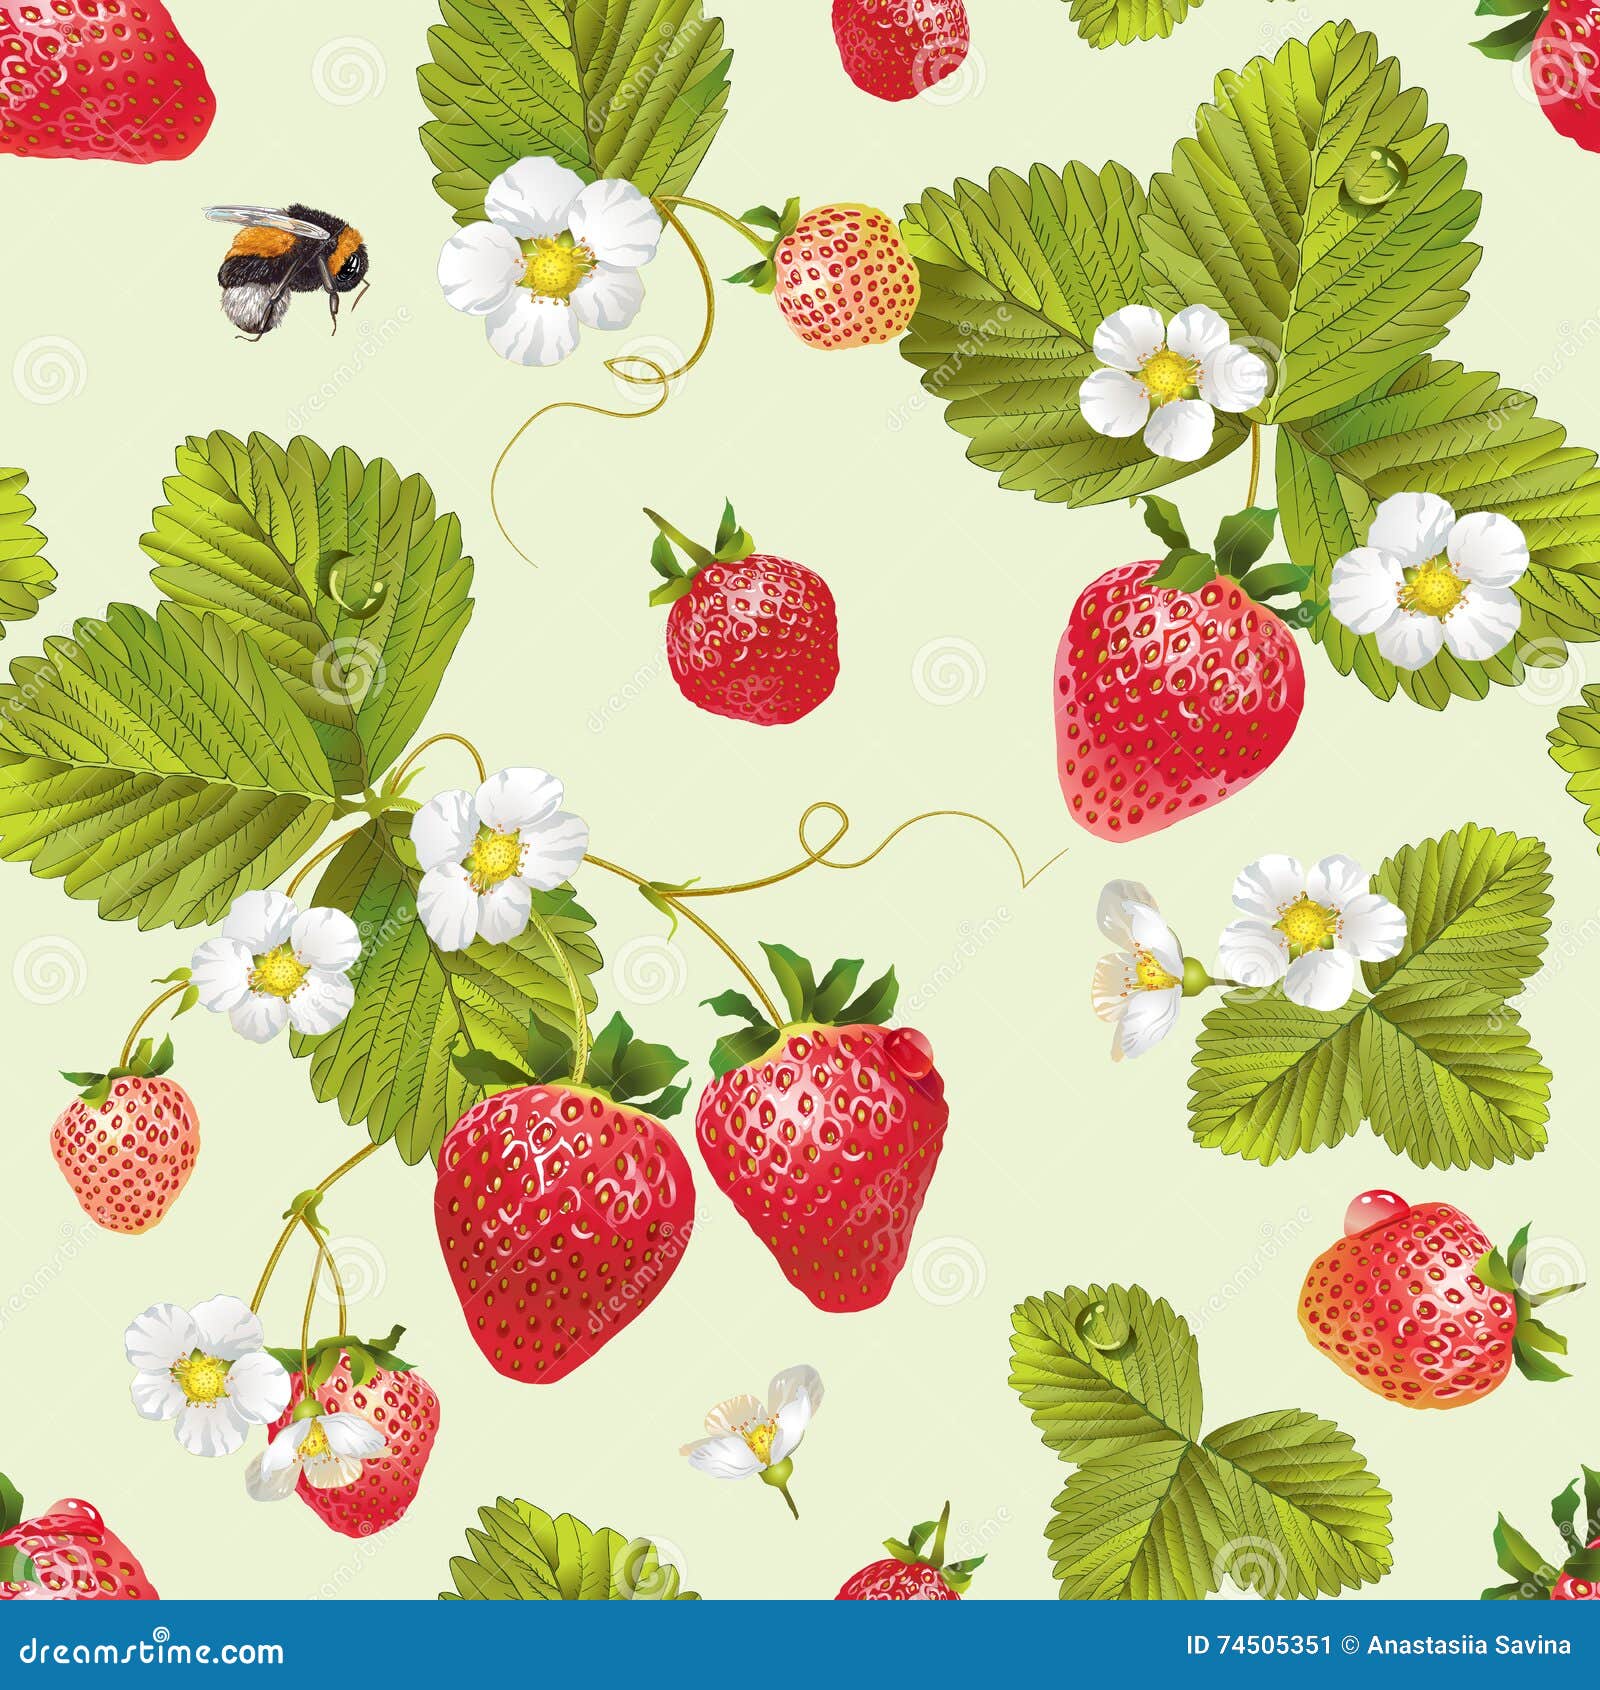  strawberry seamless pattern.